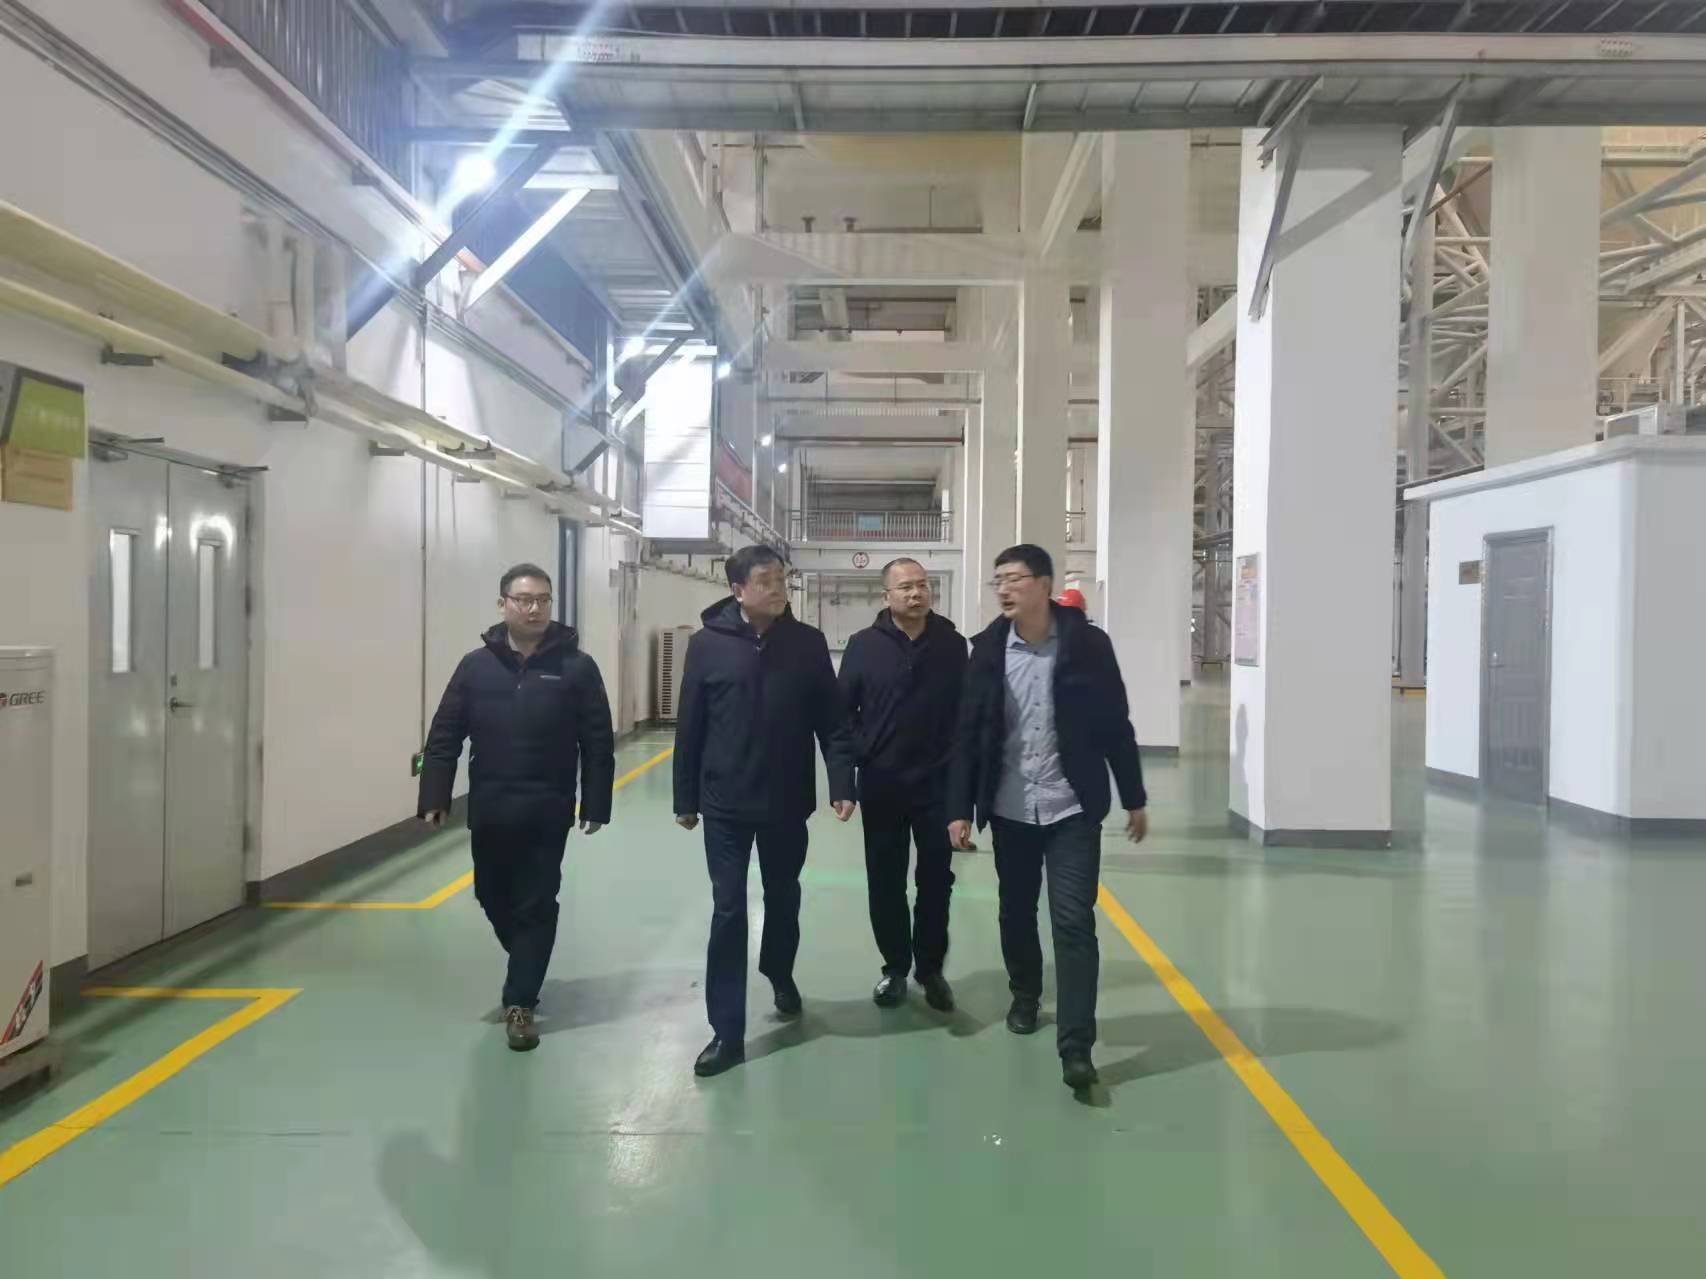 集团领导桂兹军带队慰问黑麋峰垃圾发电维保项目员工